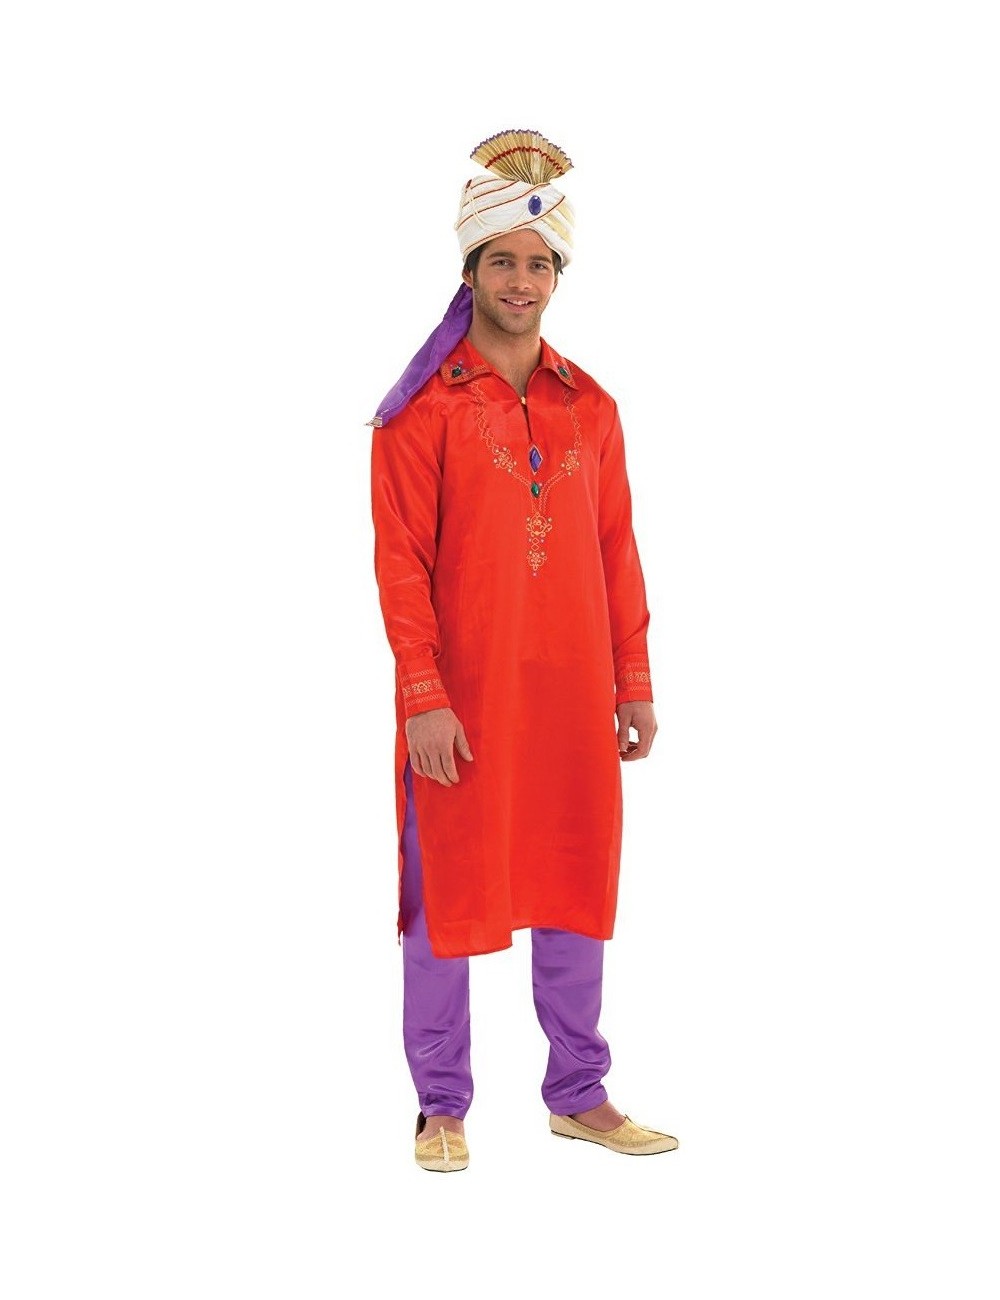 Costum Halloween barbati: Bolywood Man, rosu-mov